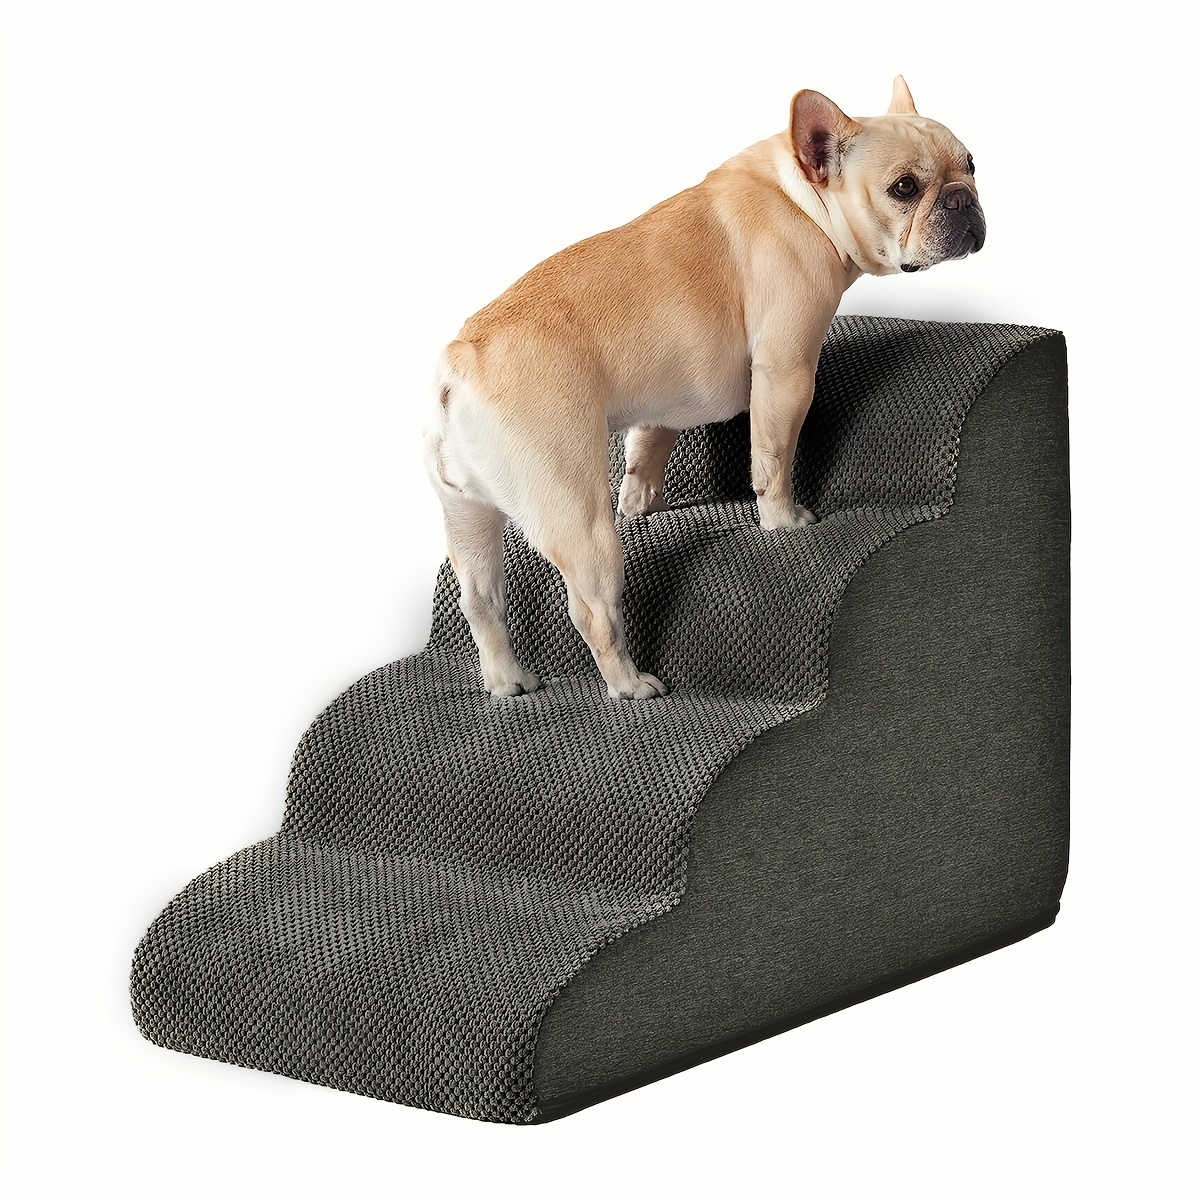 小型犬用の犬用階段 高いベッドやソファ用の4段階の犬用階段 小型犬や